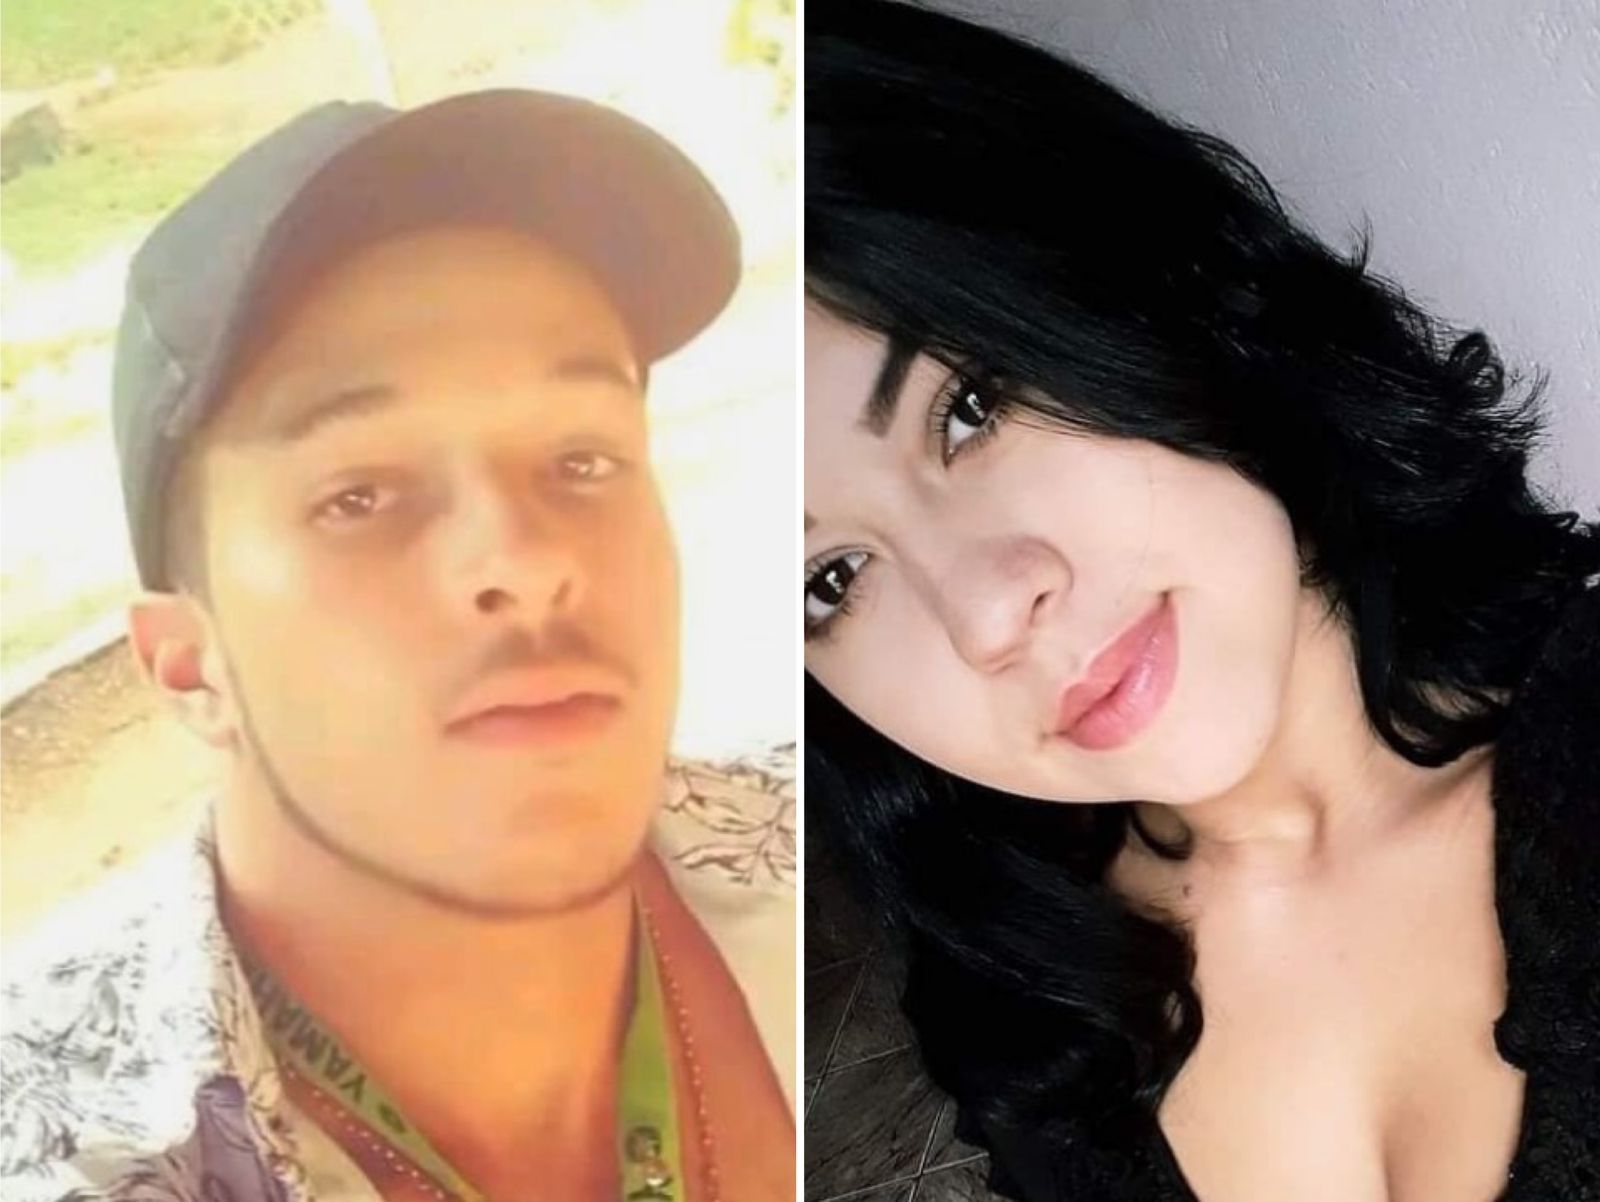 Bruno Ferreira Tavares e Lucimar Ravena Lima Pereira tinham 21 anos (Foto: Reprodução)